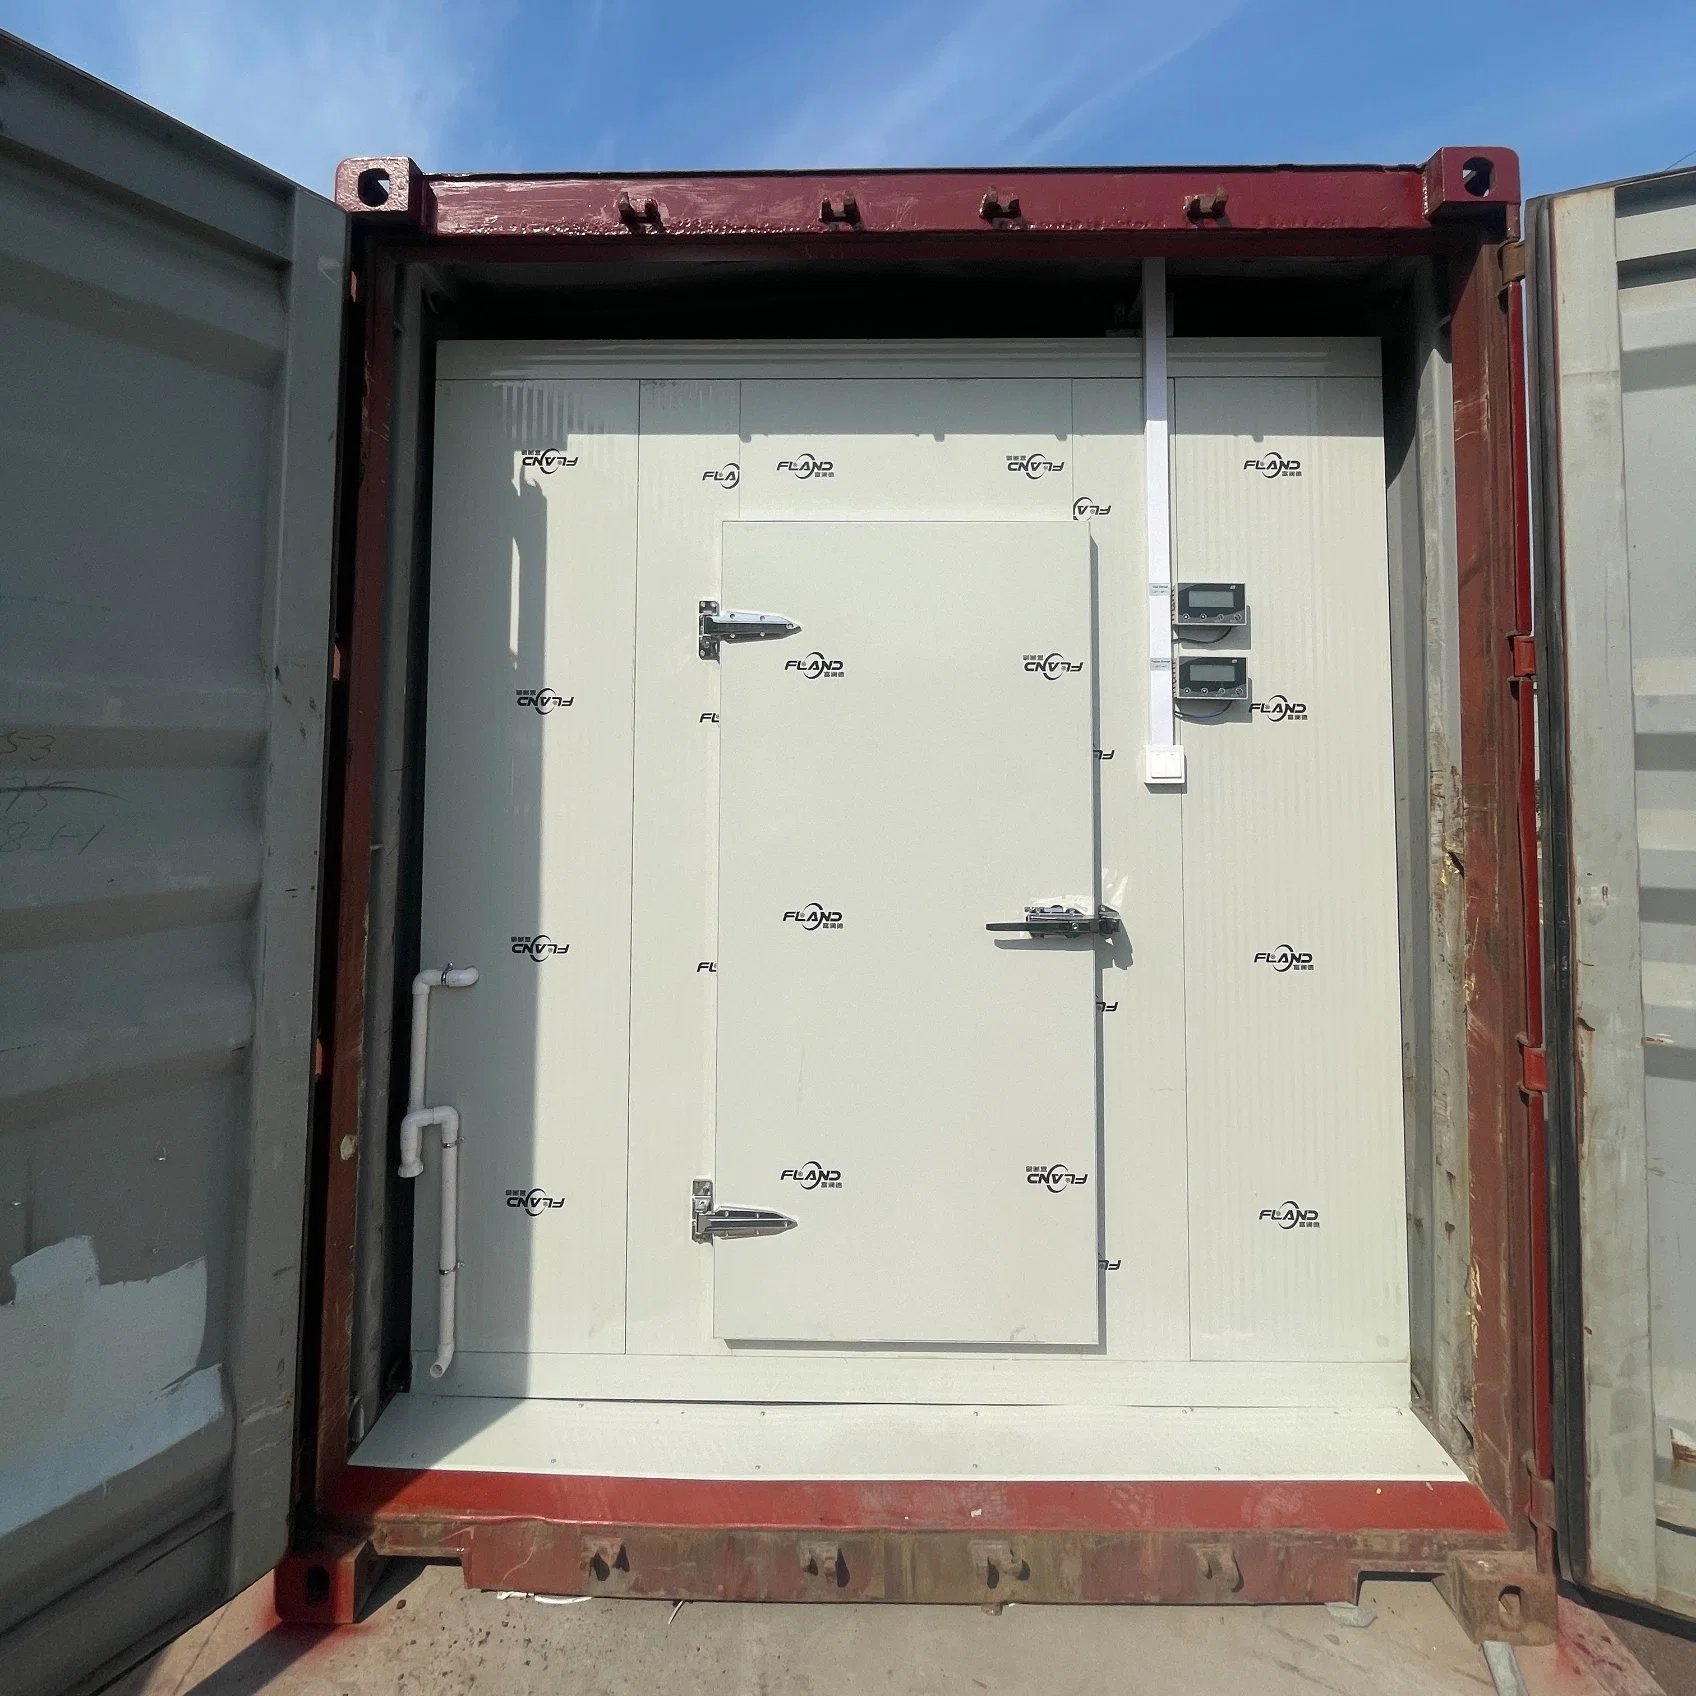 Réfrigérateur industriel pour congélateur pour chambre froide de 40 PI stockage Ultra pour congélateur Équipement